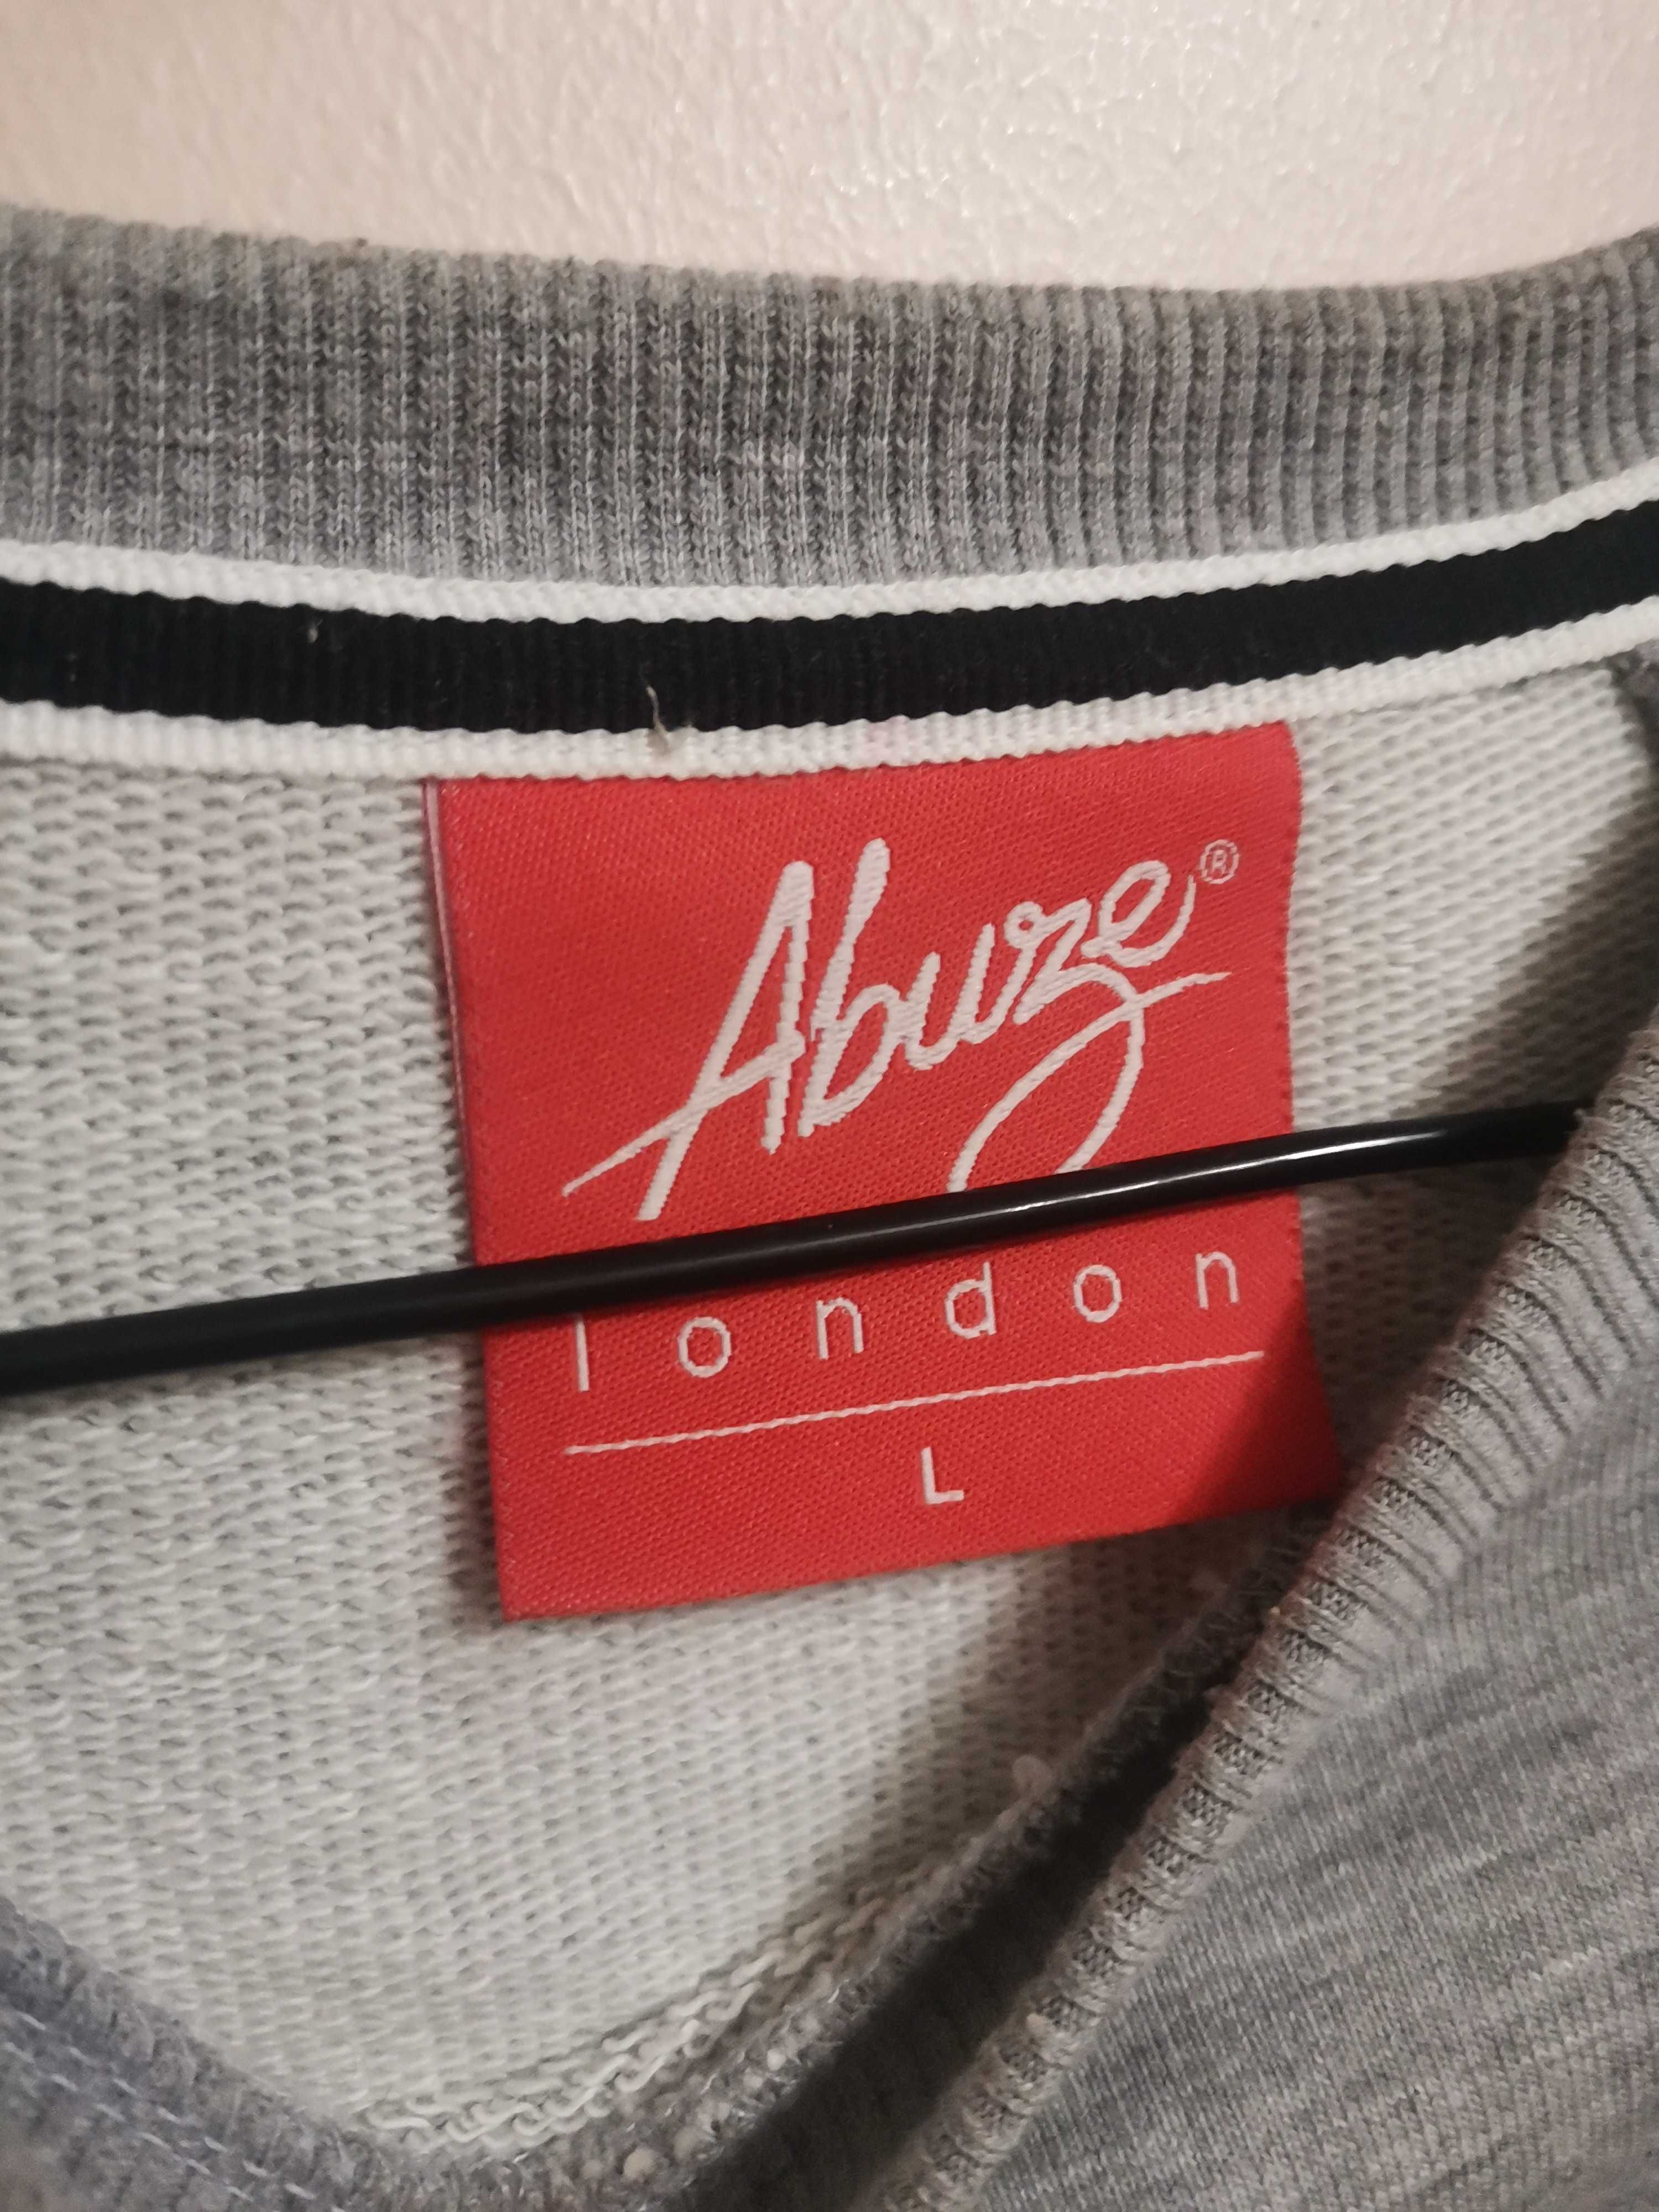 Abuze London Sweatshirt.